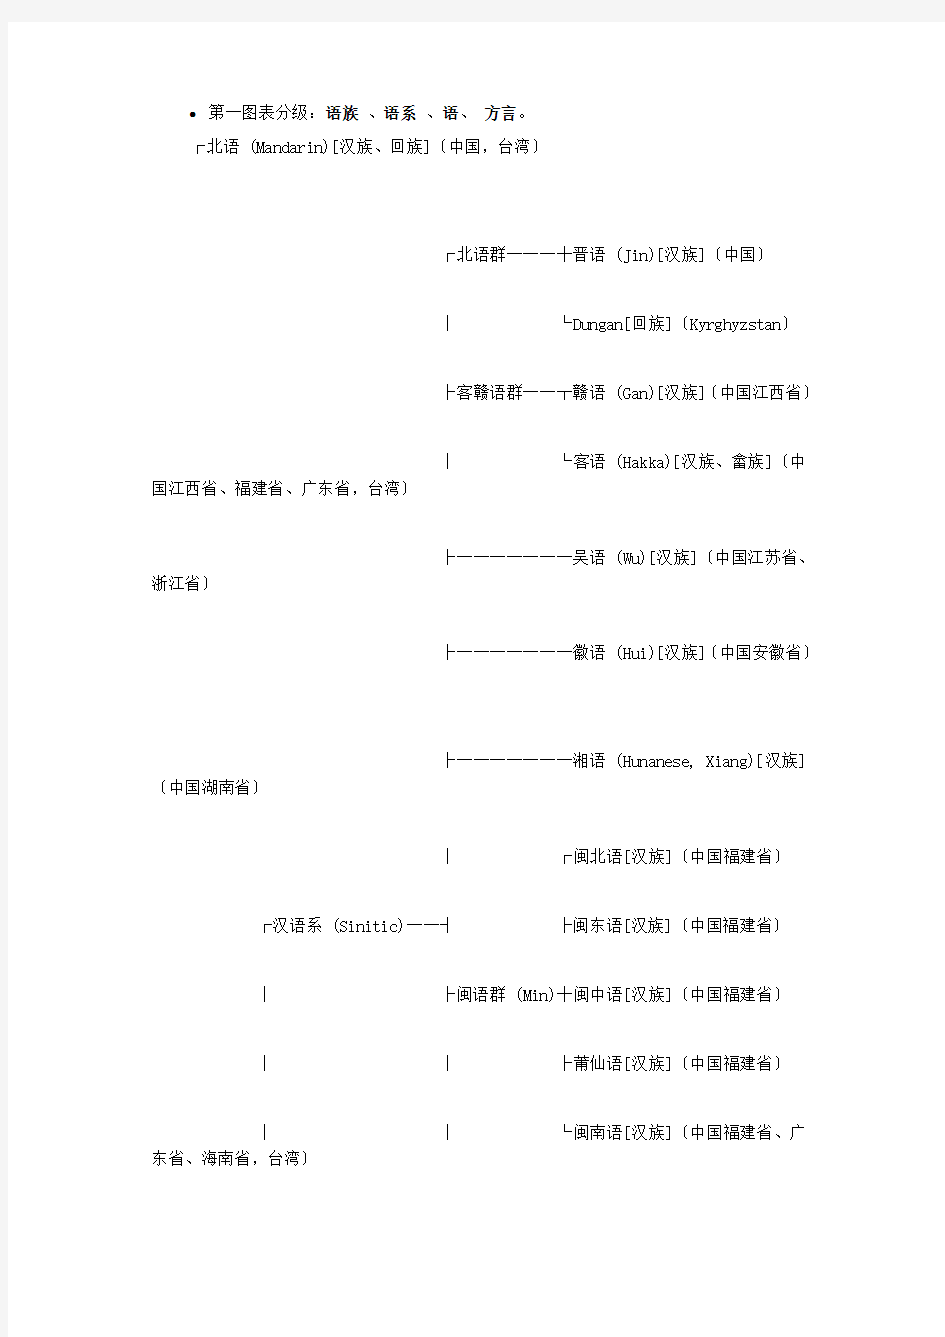 中国方言图谱及汉语发展图谱